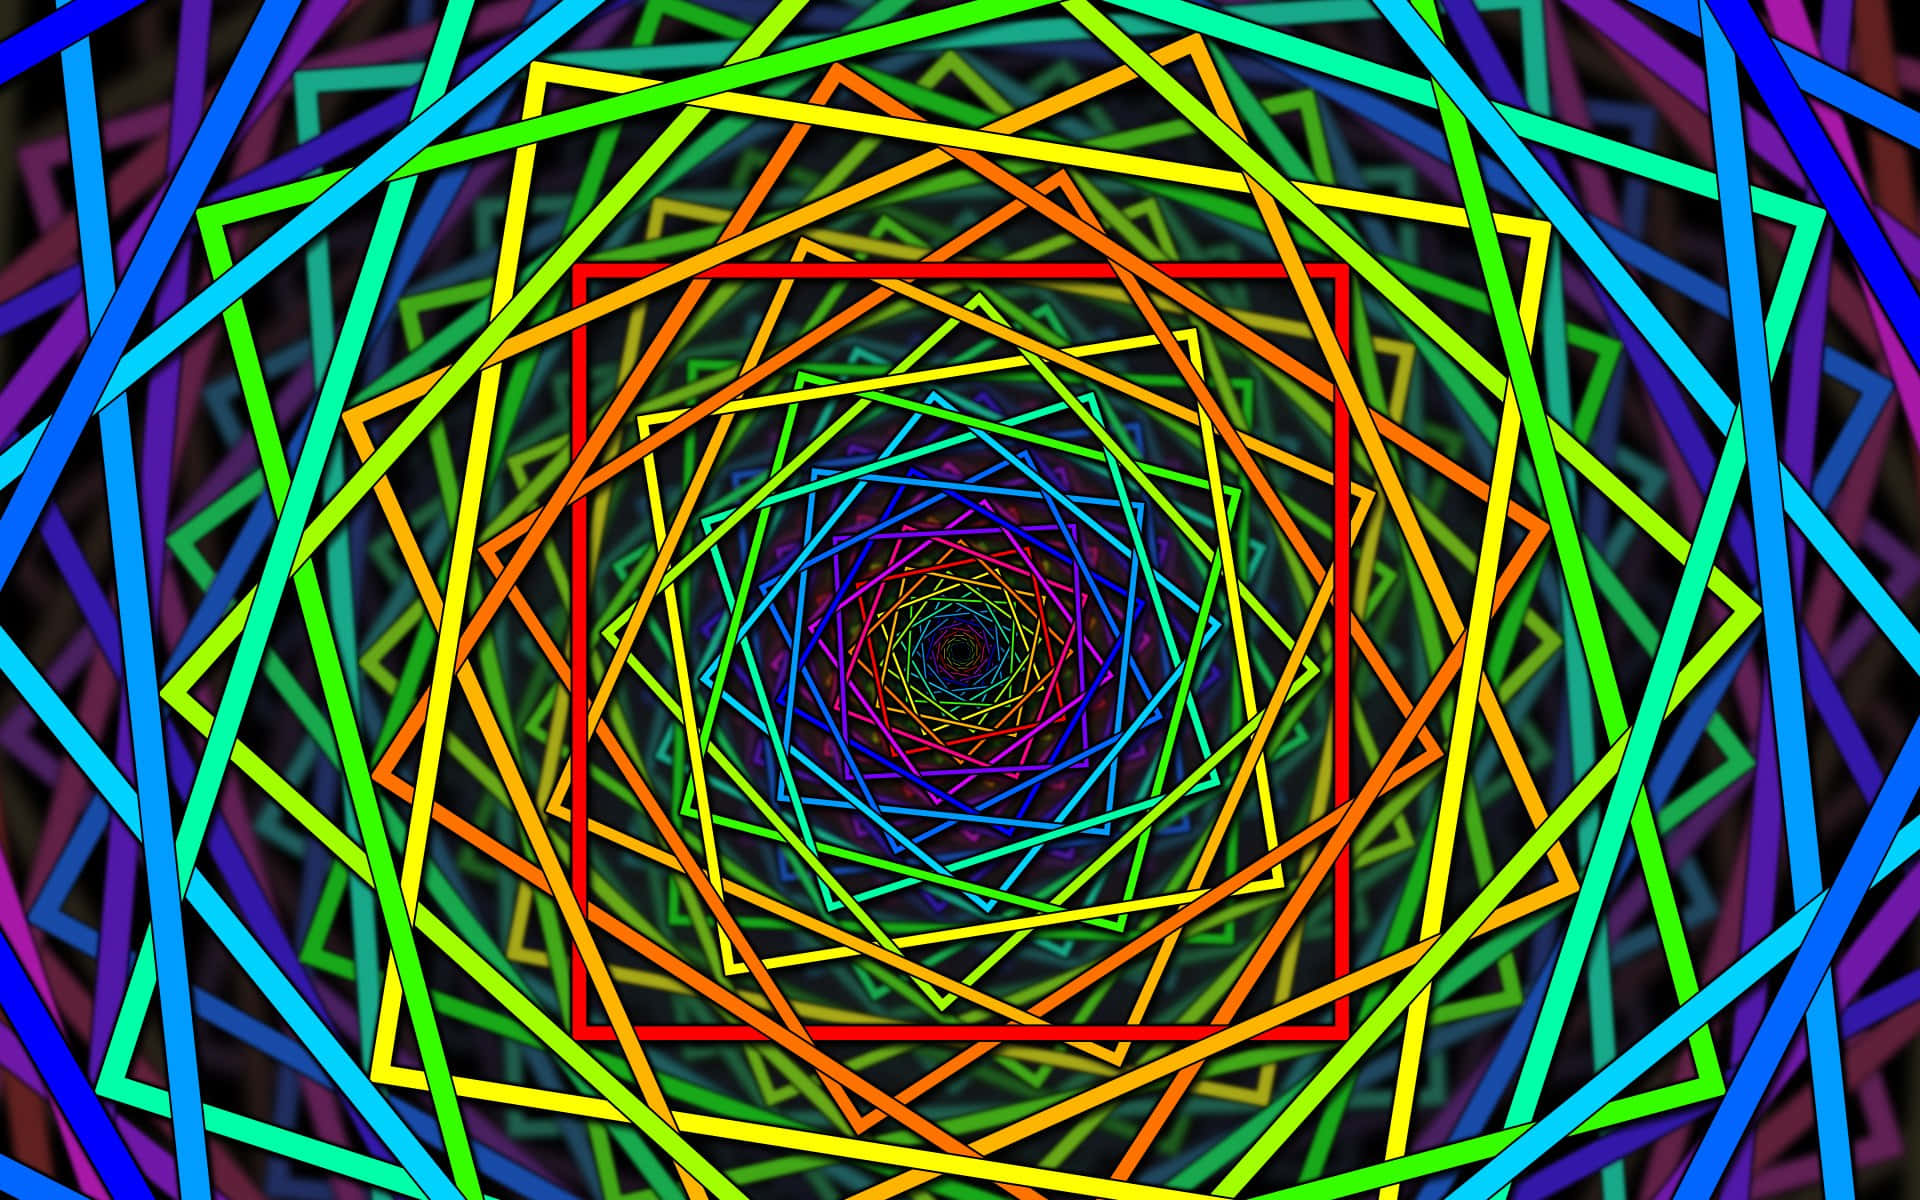 Einebunte Psychedelische Spirale Mit Einem Regenbogenfarbenen Zentrum.